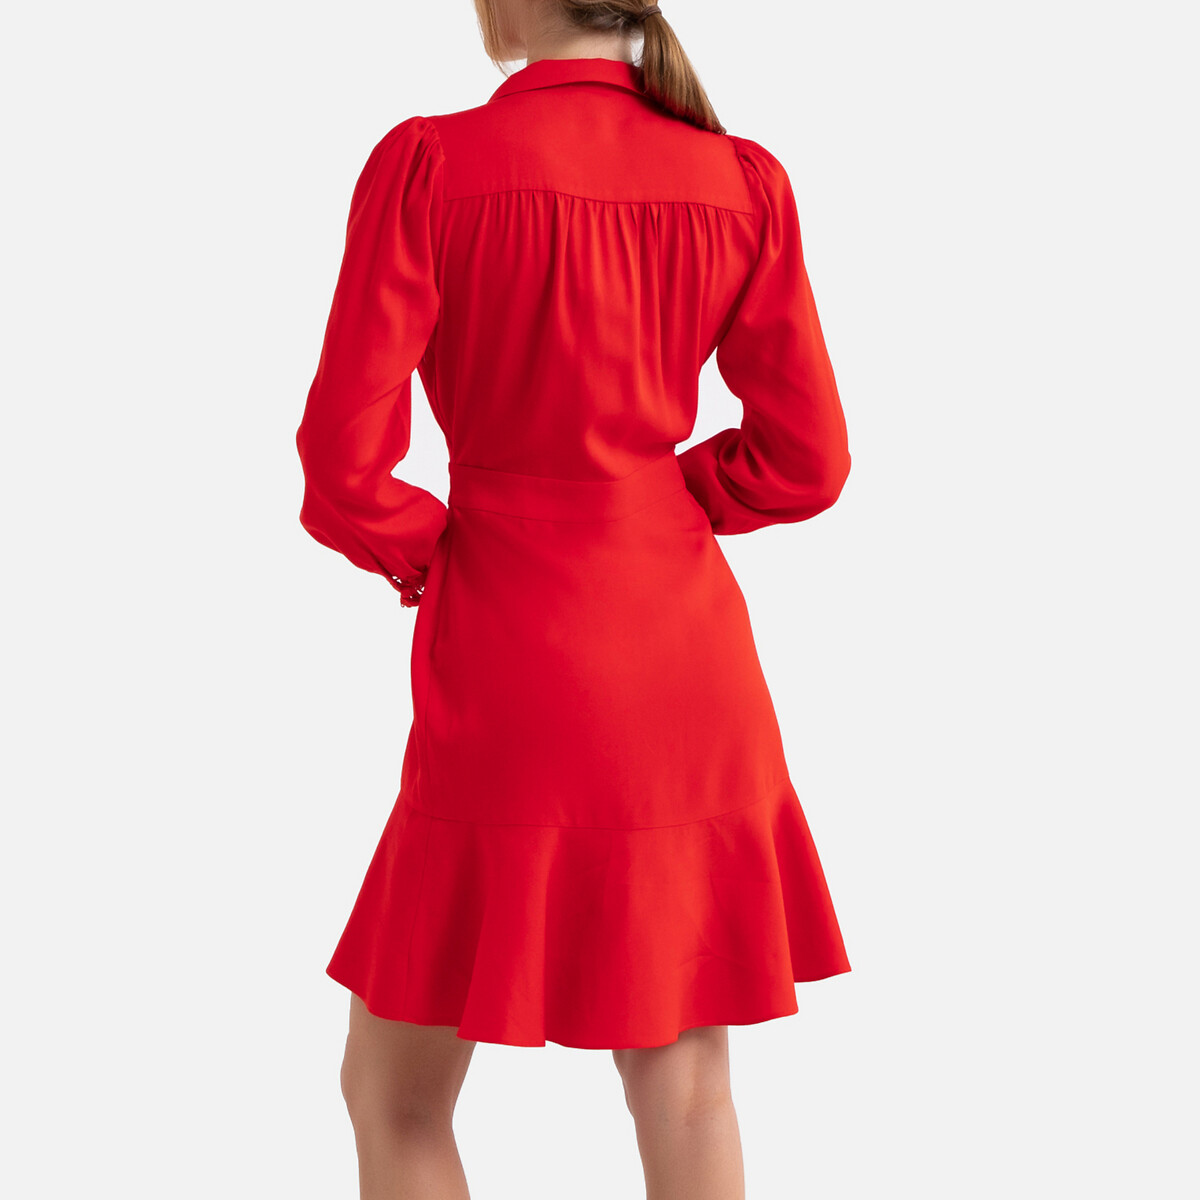 Платье La Redoute Короткое с V-образным декольте длинные рукава 3(L) красный, размер 3(L) Короткое с V-образным декольте длинные рукава 3(L) красный - фото 3